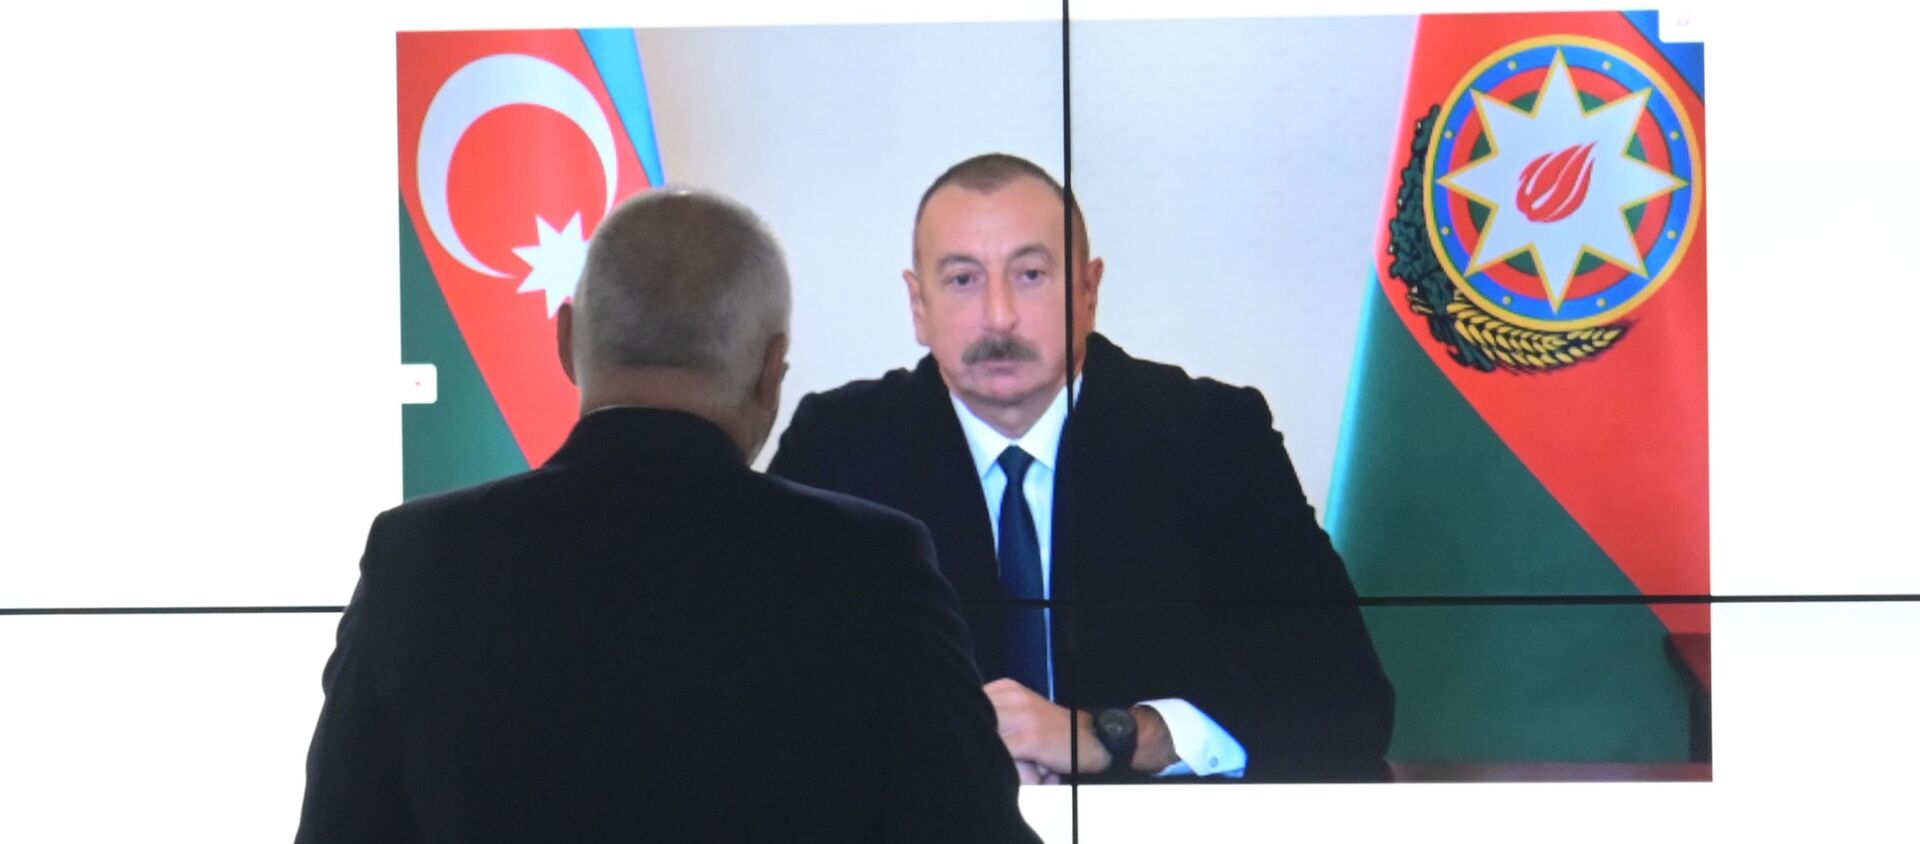 Azerbaijani President Aliyev during exclusive interview with Sputnik - Sputnik International, 1920, 15.10.2020